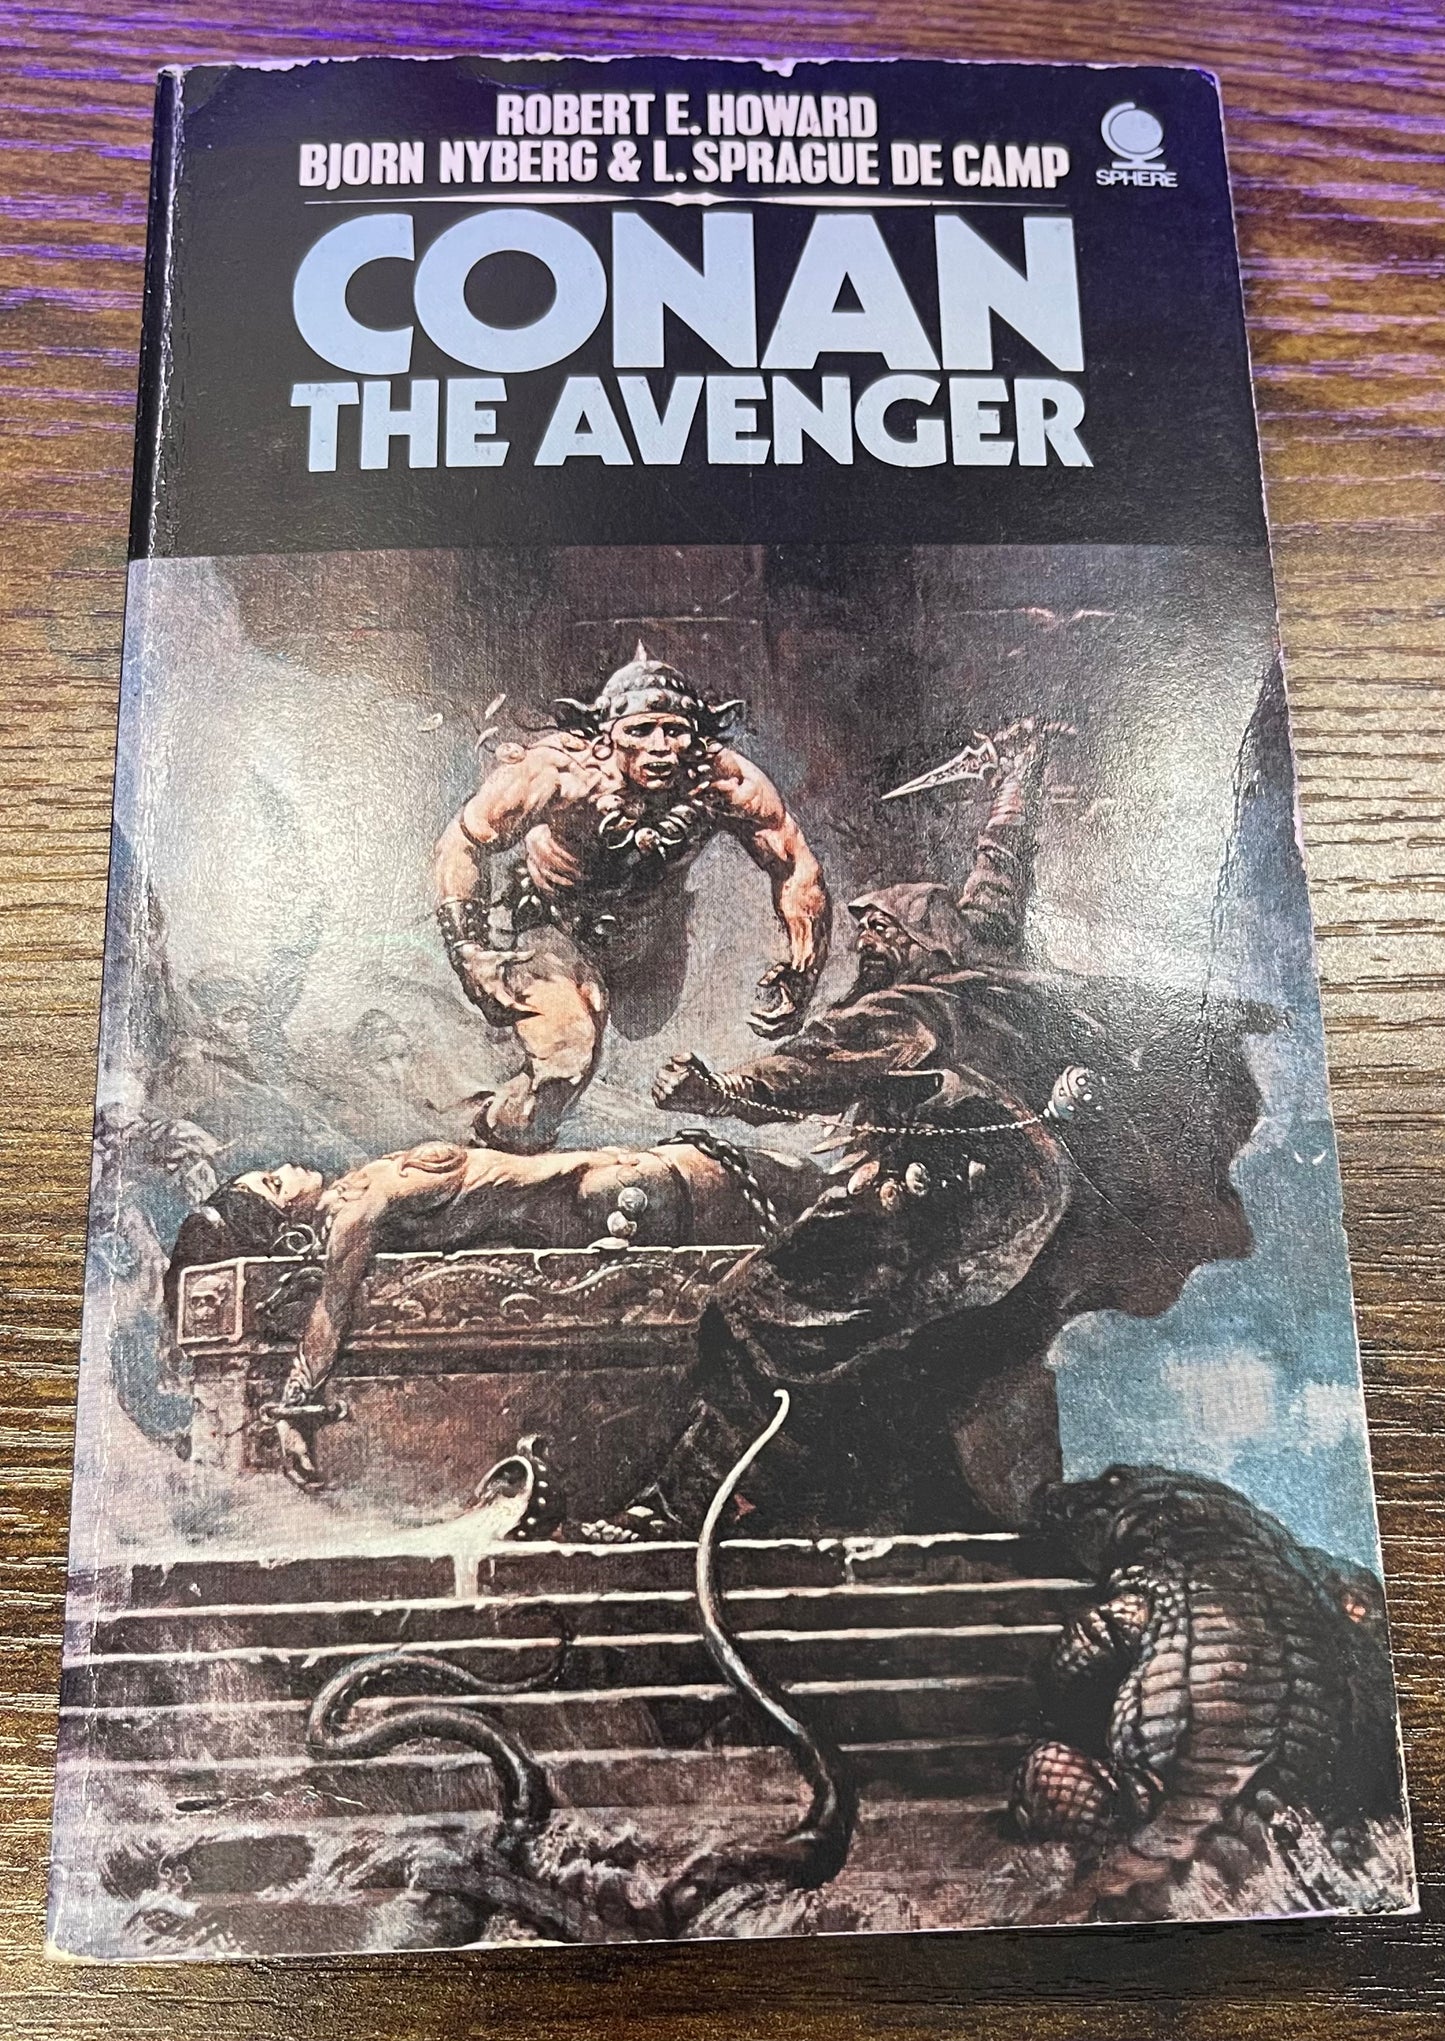 Conan the Avenger by Robert E. Howard, Bjorn Nyberg, & Sprague De Camp